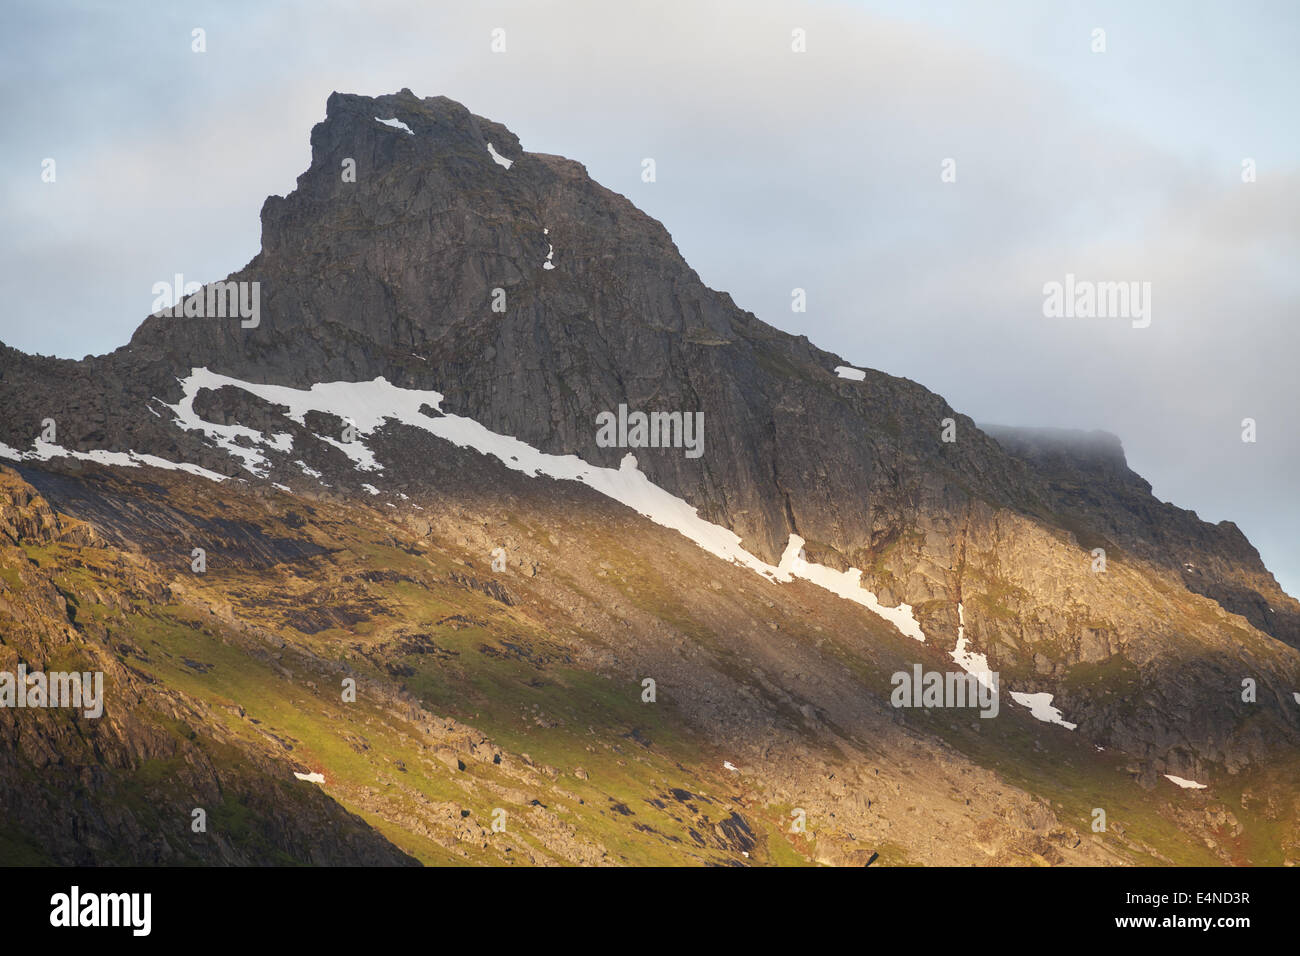 Montagne en songe d'une nuit, Ramberg, Norvège Banque D'Images